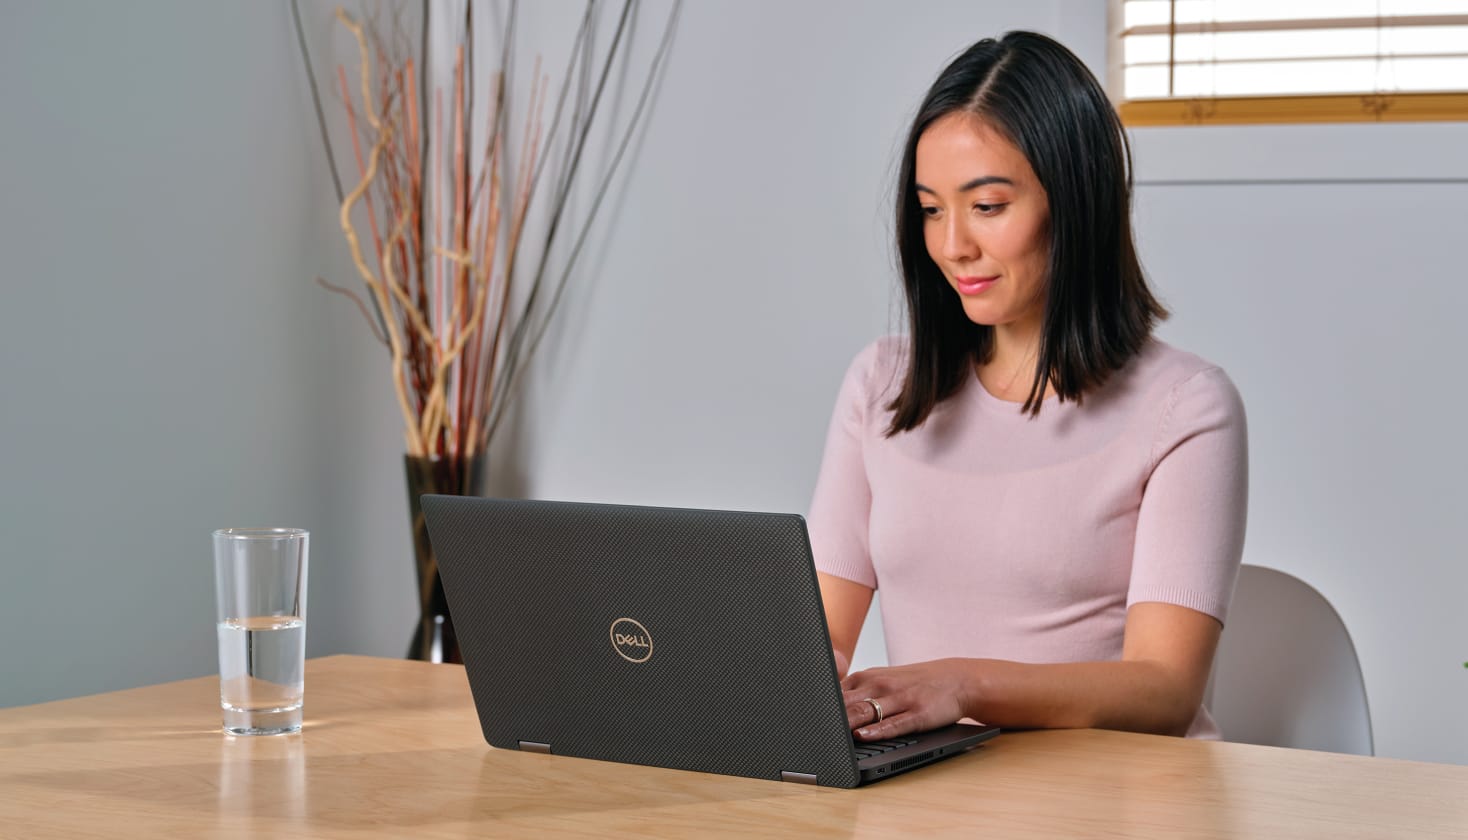 En person, som kigger på en bærbar computer, som formodentlig begynder på et kundekampagneforløb.